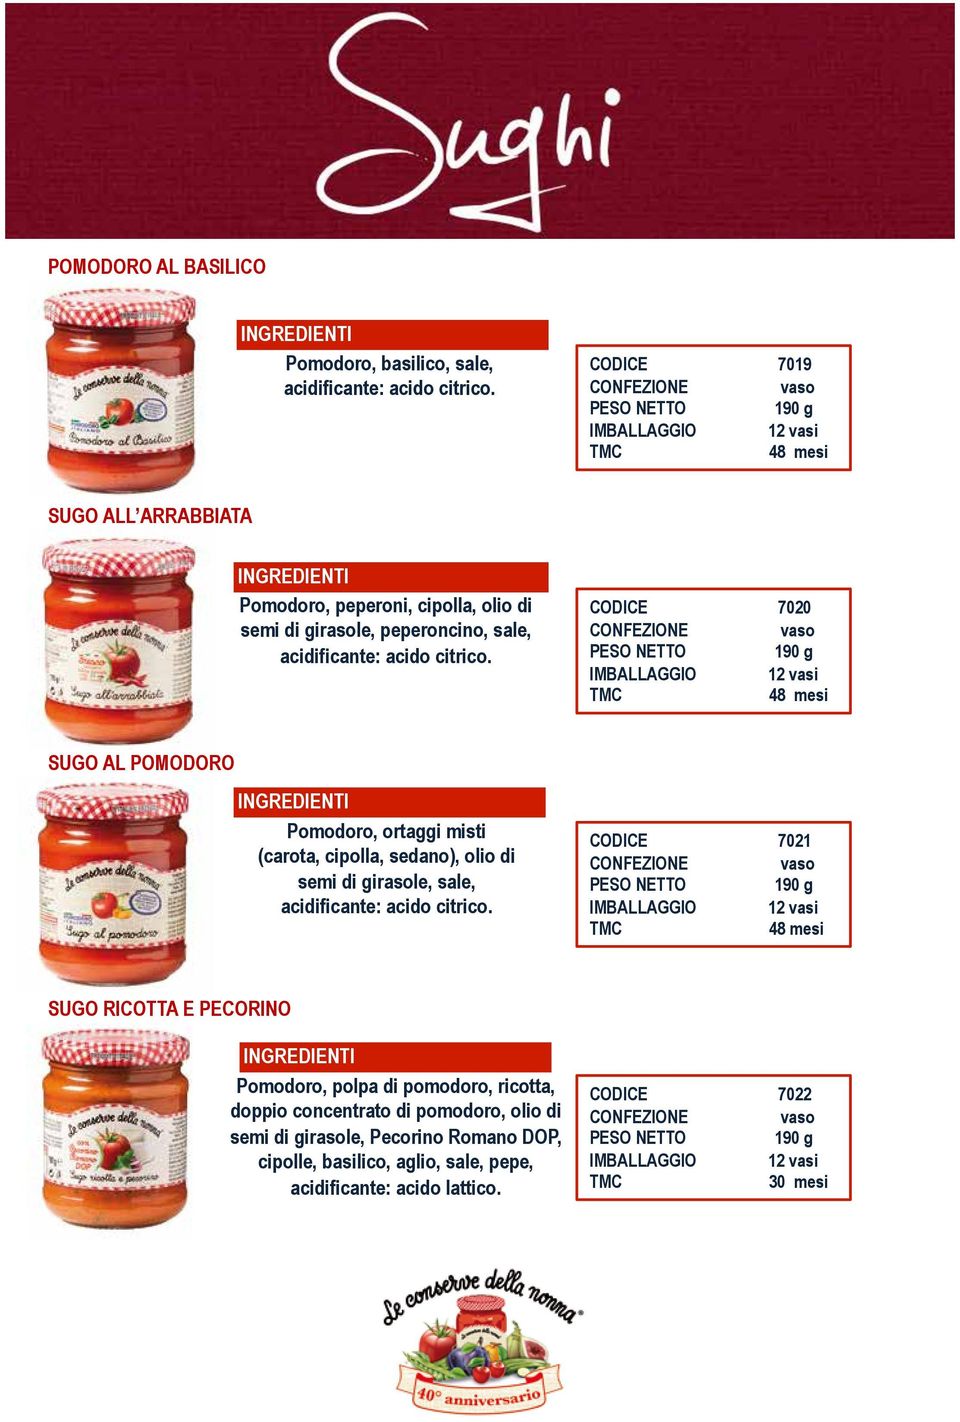 CODICE 7020 SUGO AL POMODORO Pomodoro, ortaggi misti (carota, cipolla, sedano), olio di semi di girasole, sale, acidificante: acido citrico.